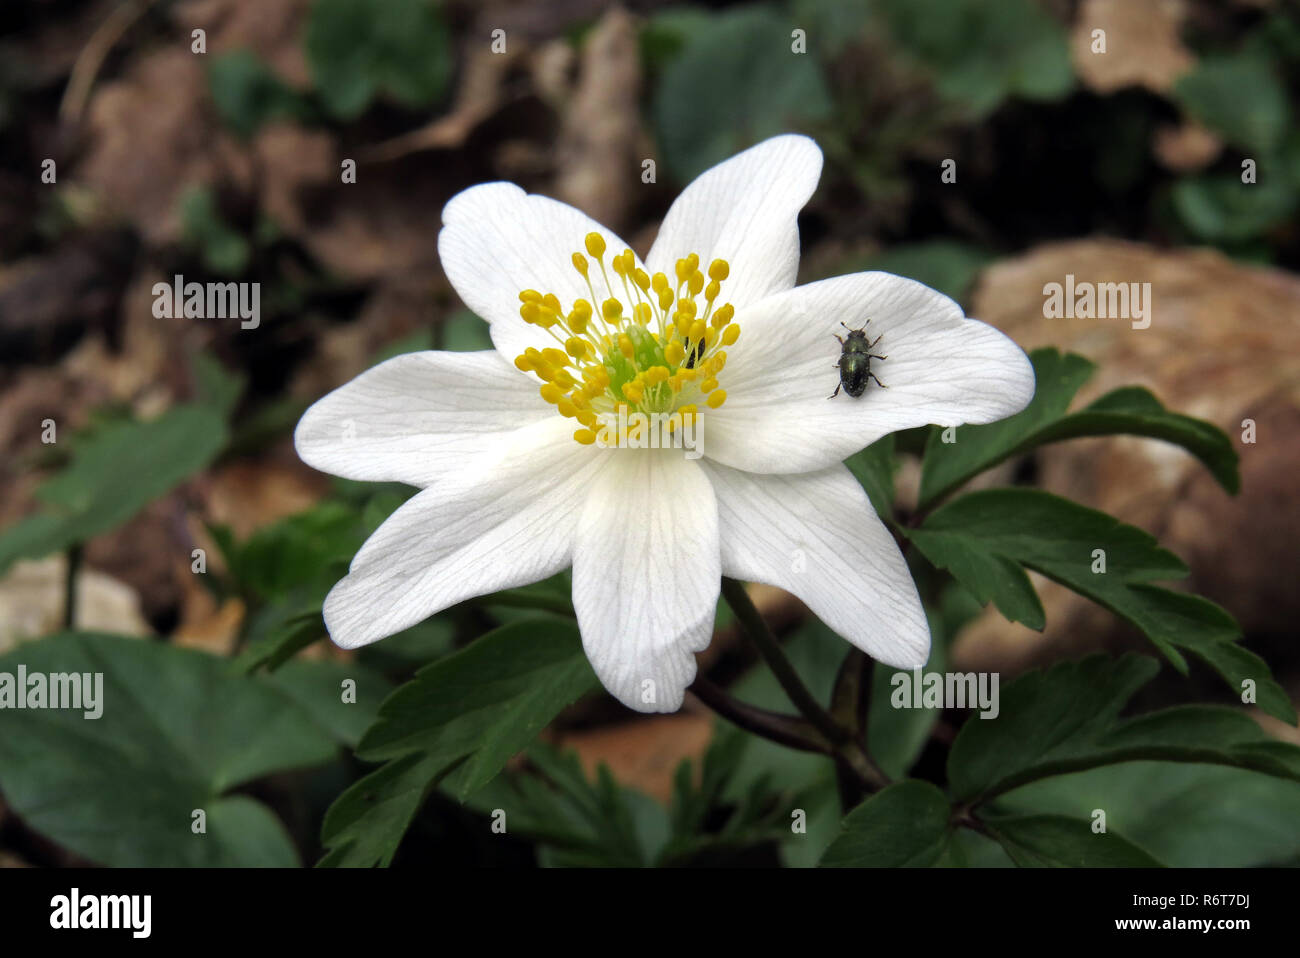 wood anemone,anemone,anemone nemorosa,white flower in close-up Stock Photo